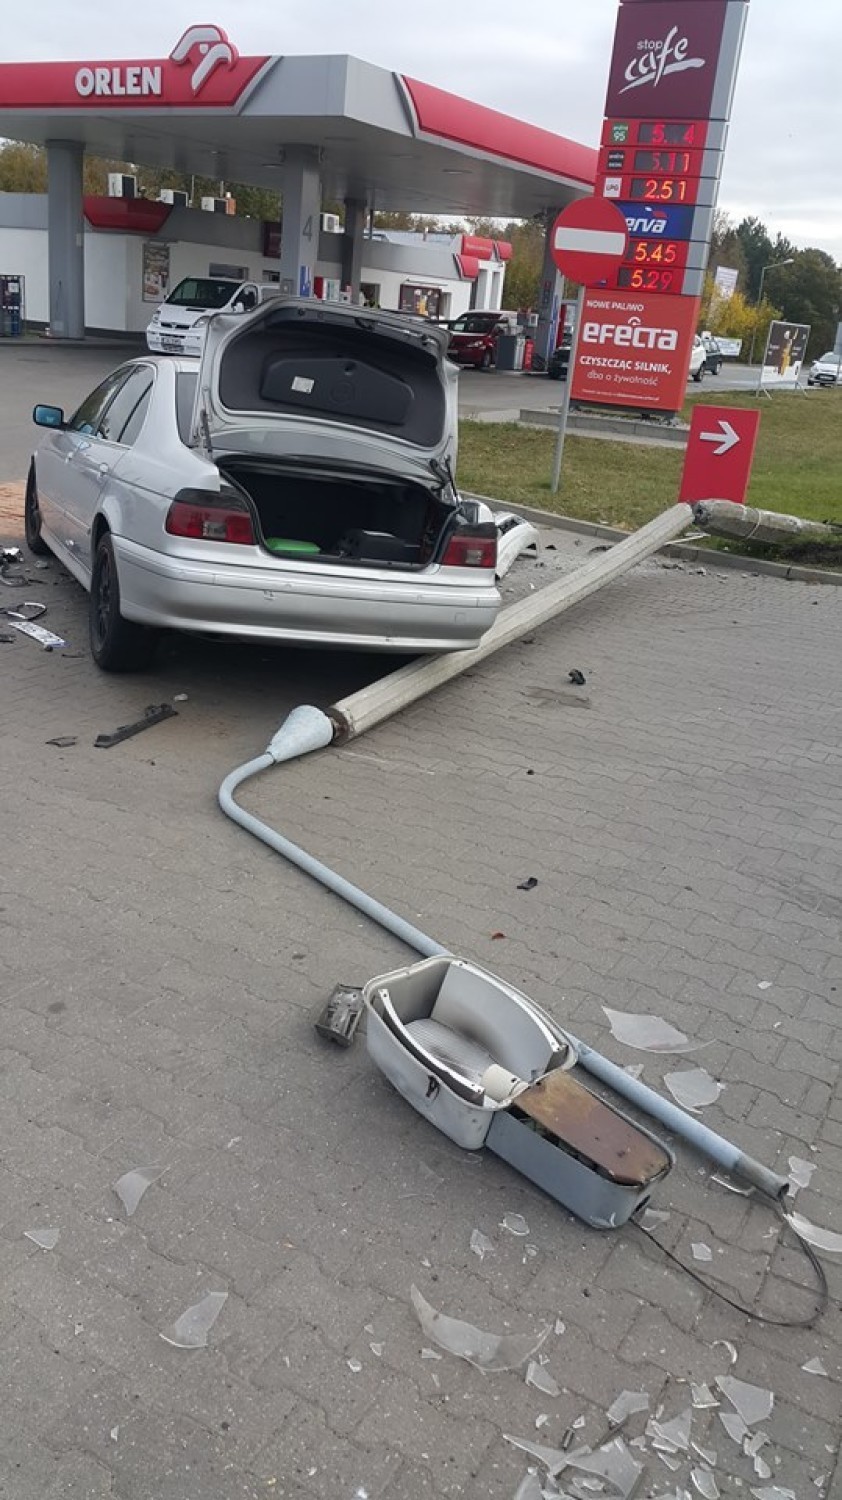 Wypadek na ulicy Mikołaja Kopernika w Ciechocinku. Kierowca BMW w stanie po użyciu alkoholu uderzył w latarnie [zdjęcia]